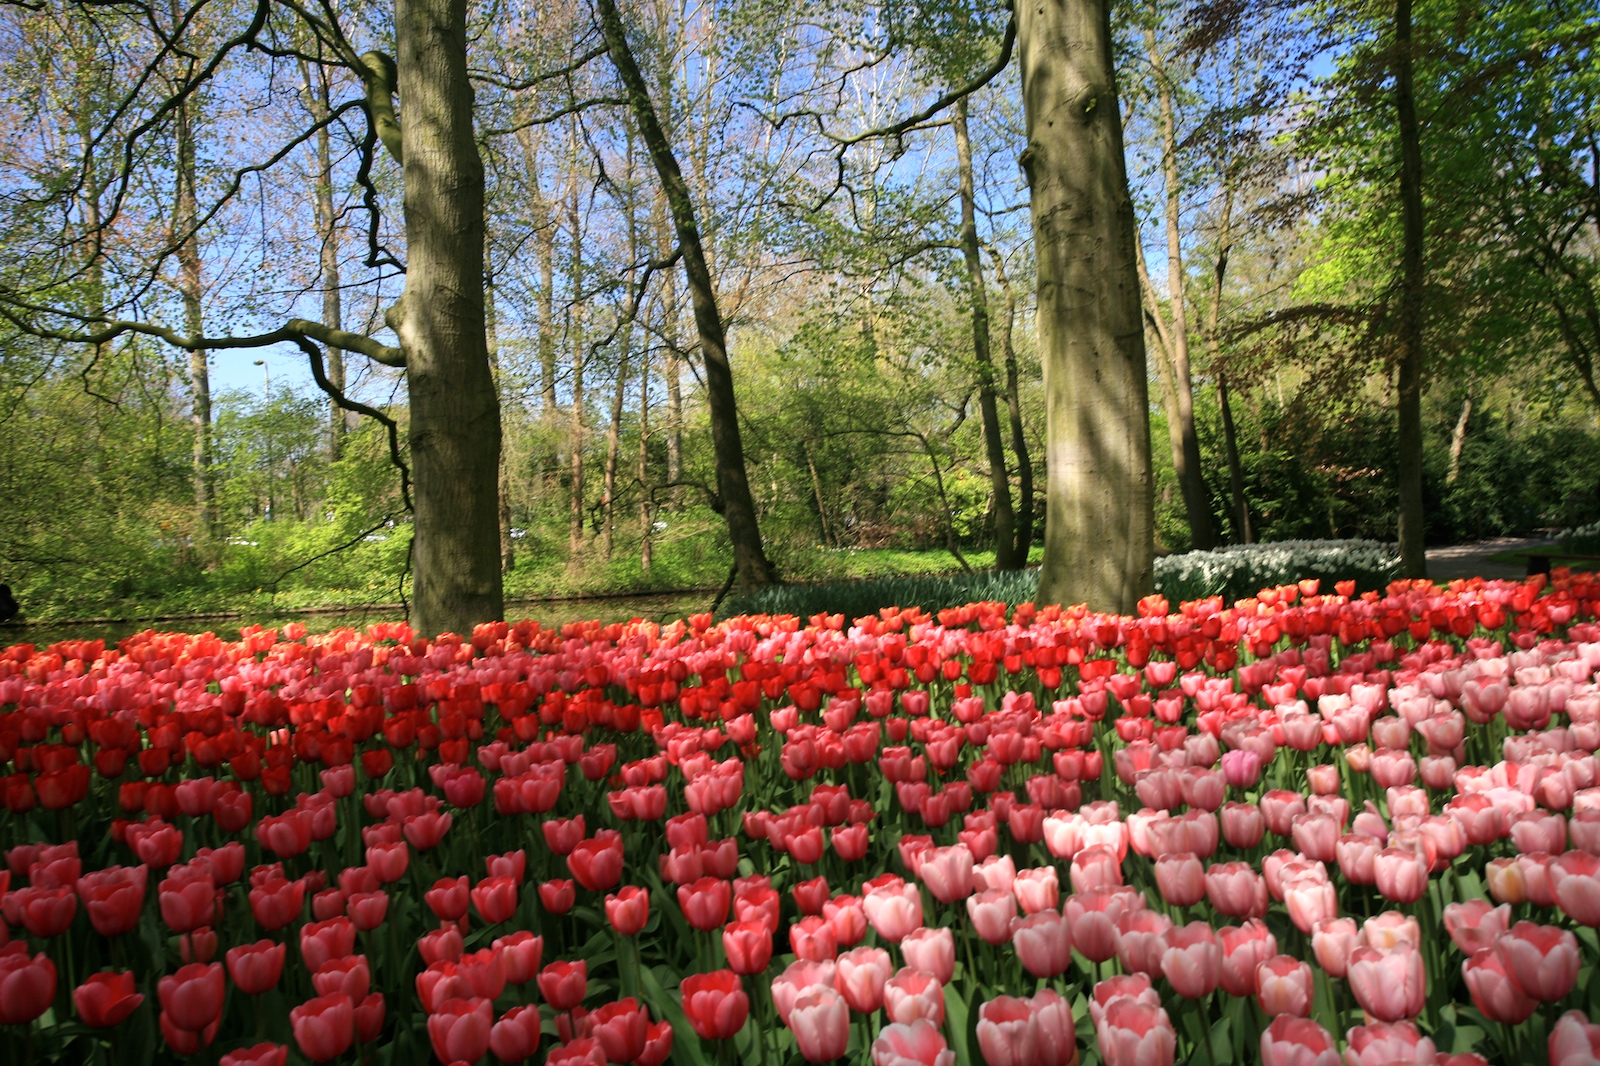 Keukefhof - tulips